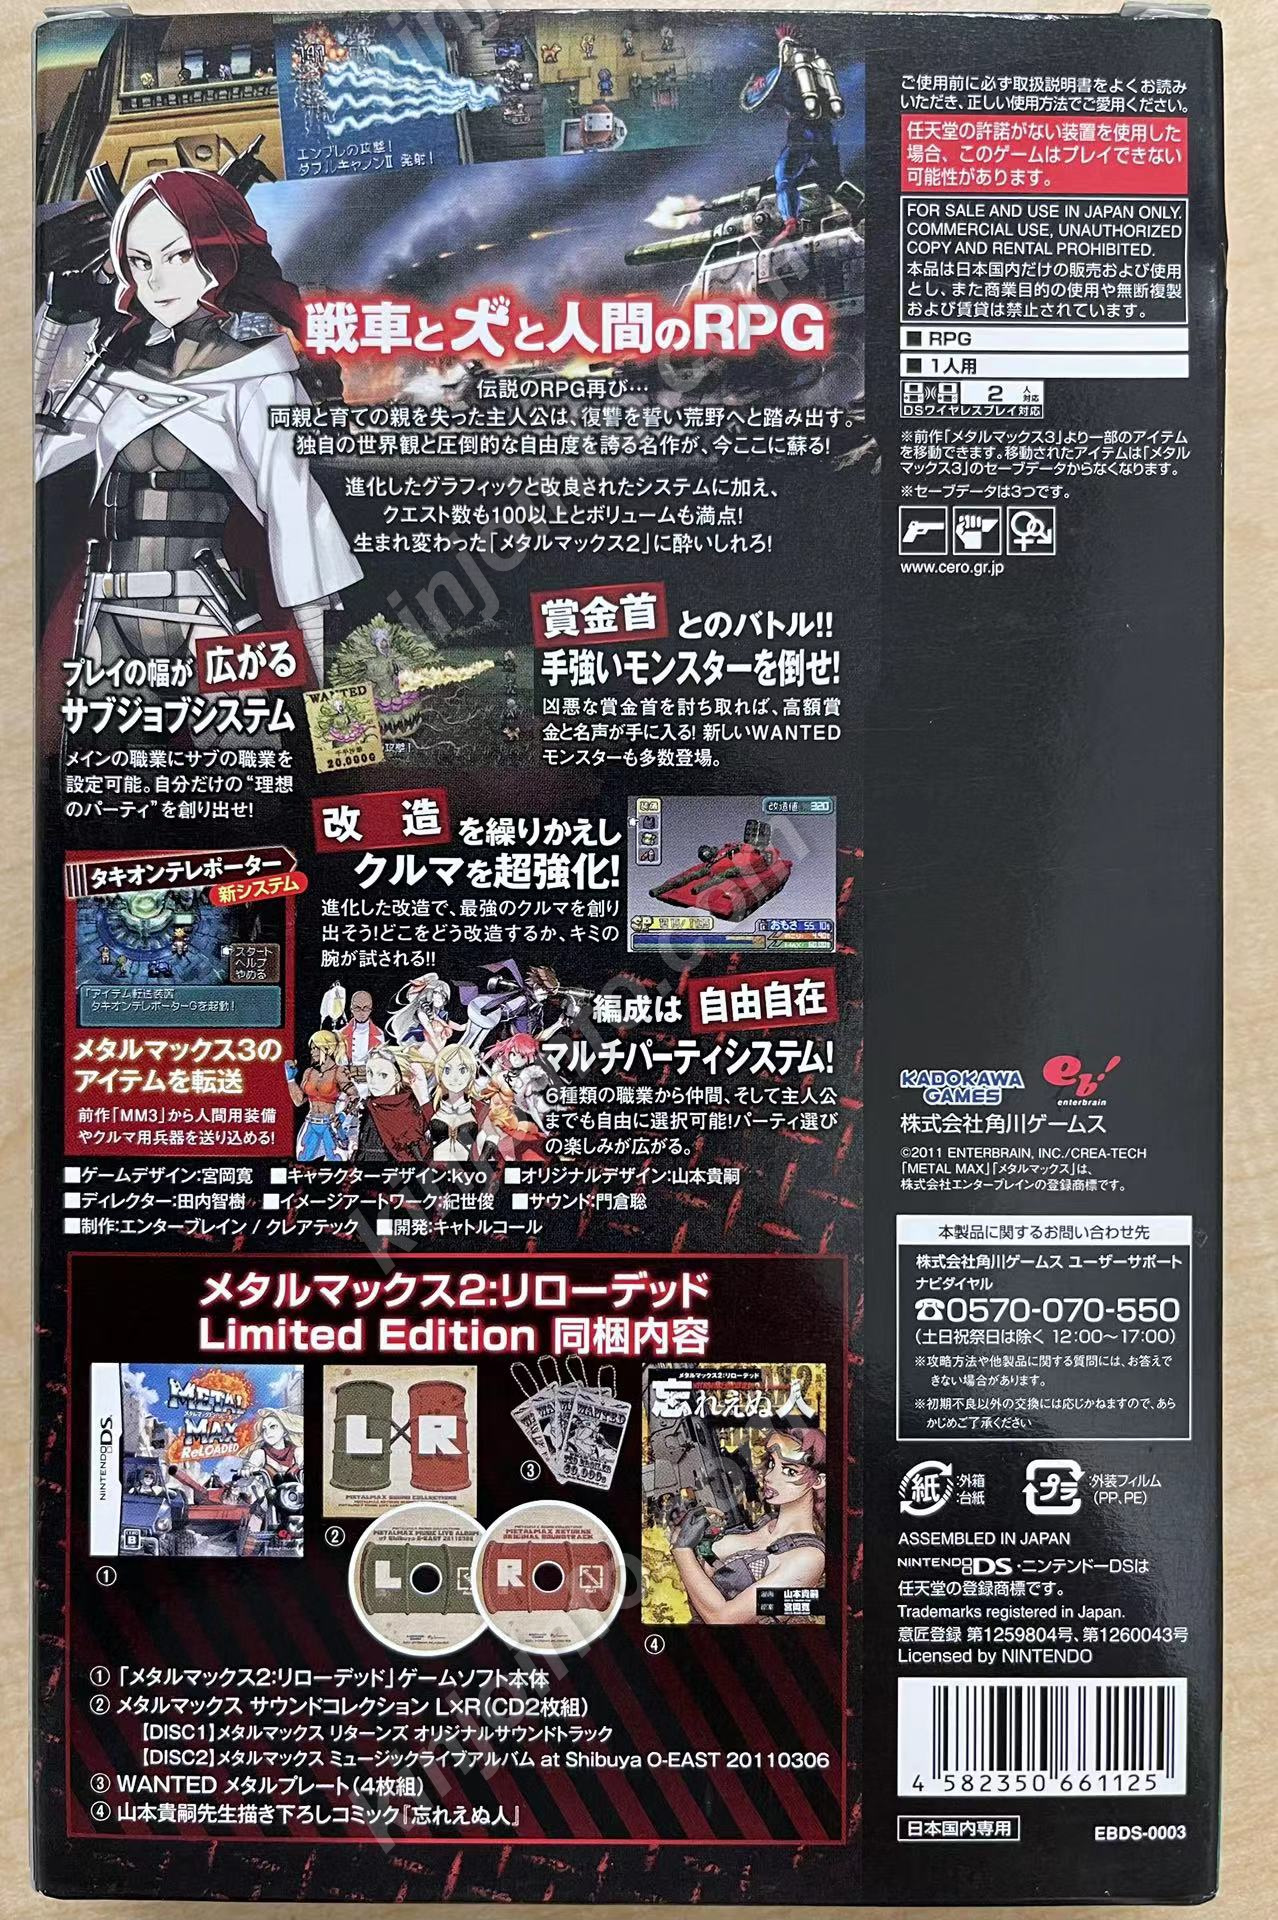 メタルマックス2:リローデッド【新品未使用・限定版・DS日本版